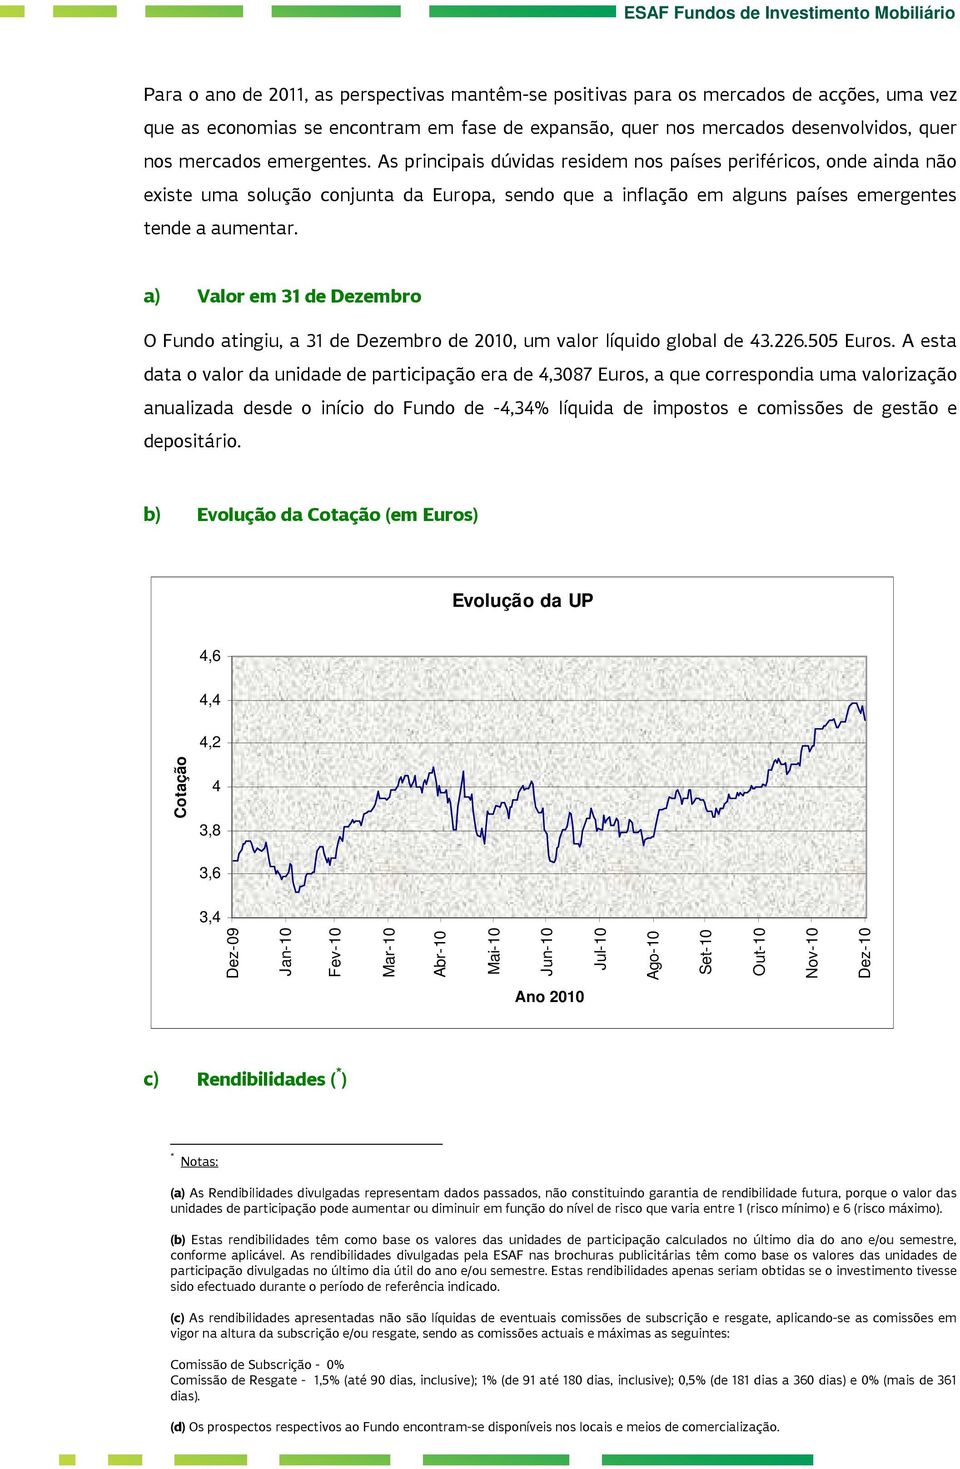 a) Valor em 31 de Dezembro O Fundo atingiu, a 31 de Dezembro de 2010, um valor líquido global de 43.226.505 Euros.